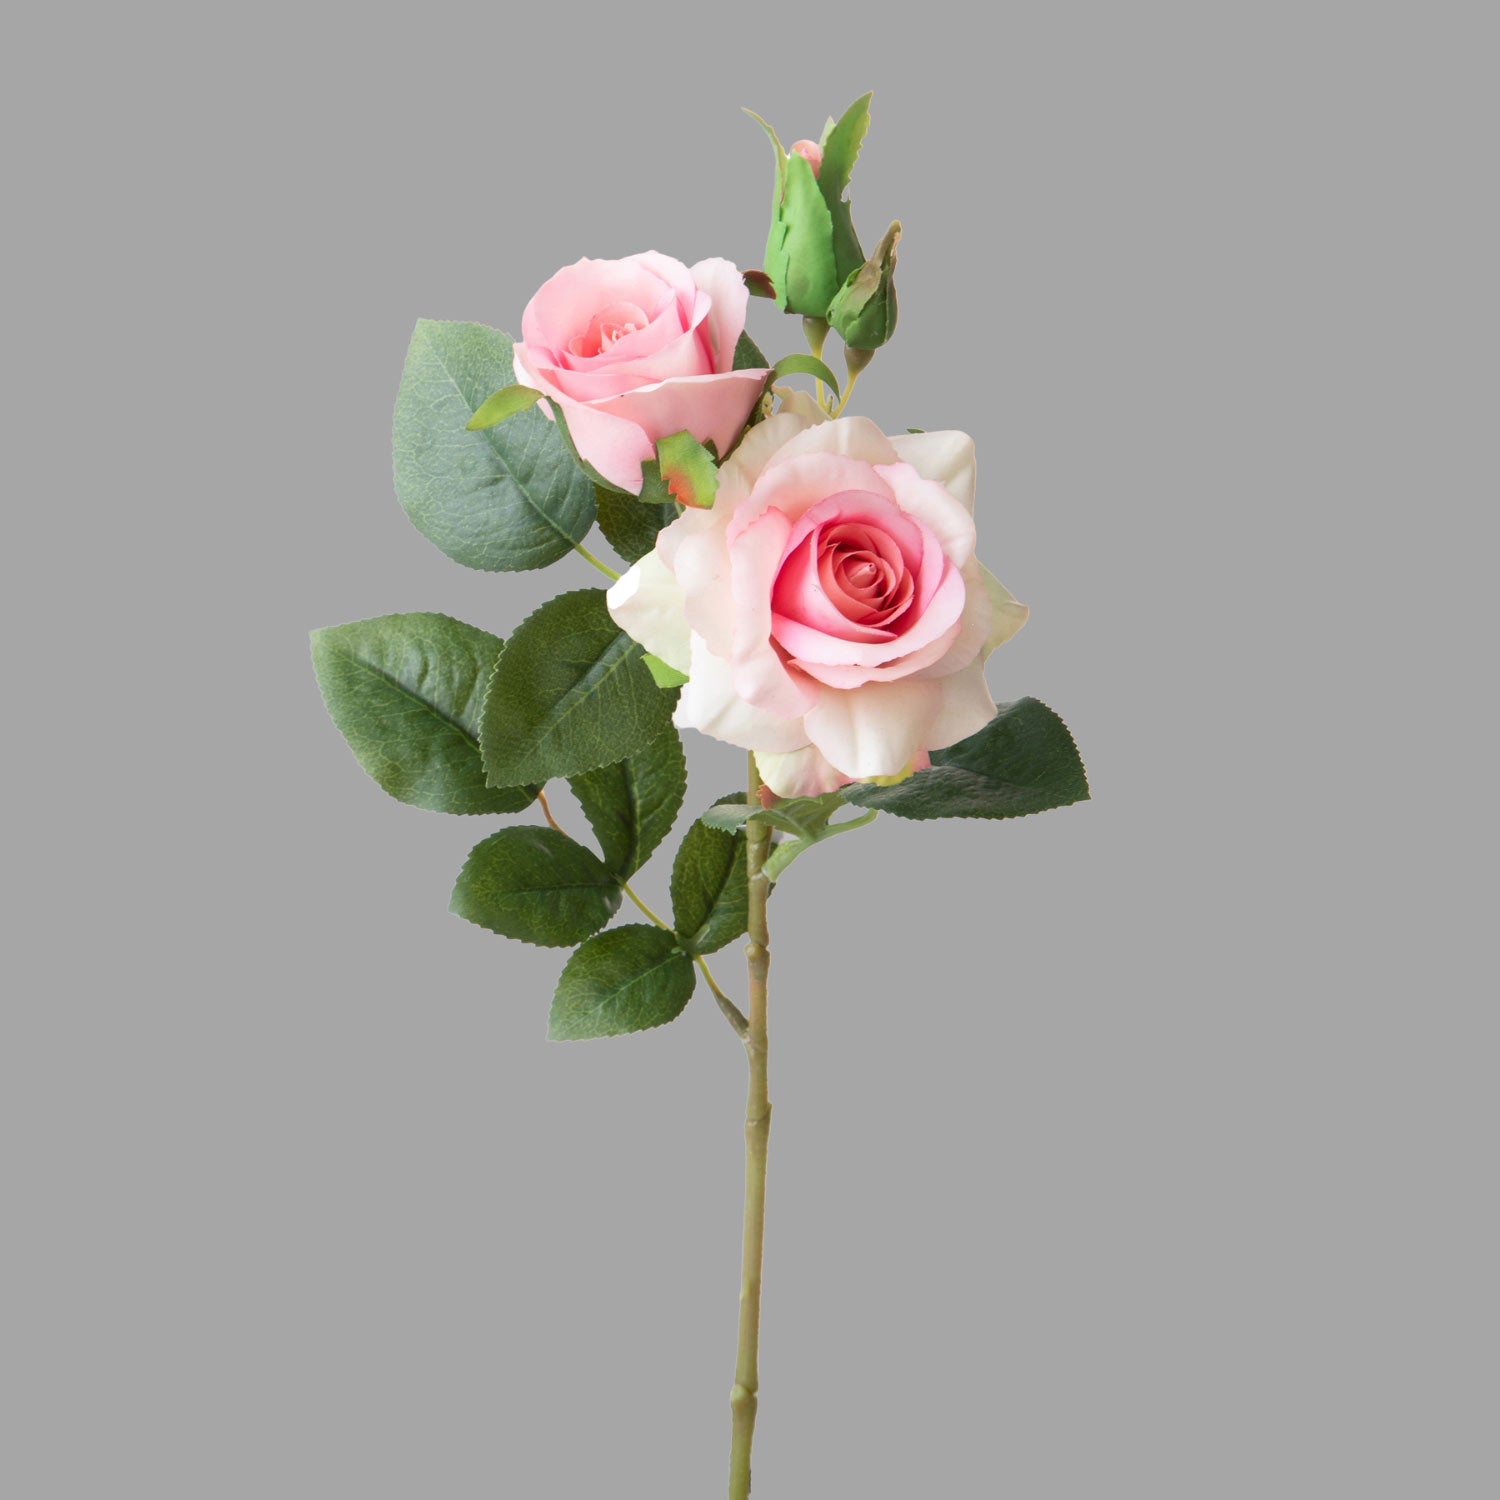 Rózsa művirág, halvány rózsaszín színárnyalatú nyílt és bimbós virágfejekkel.